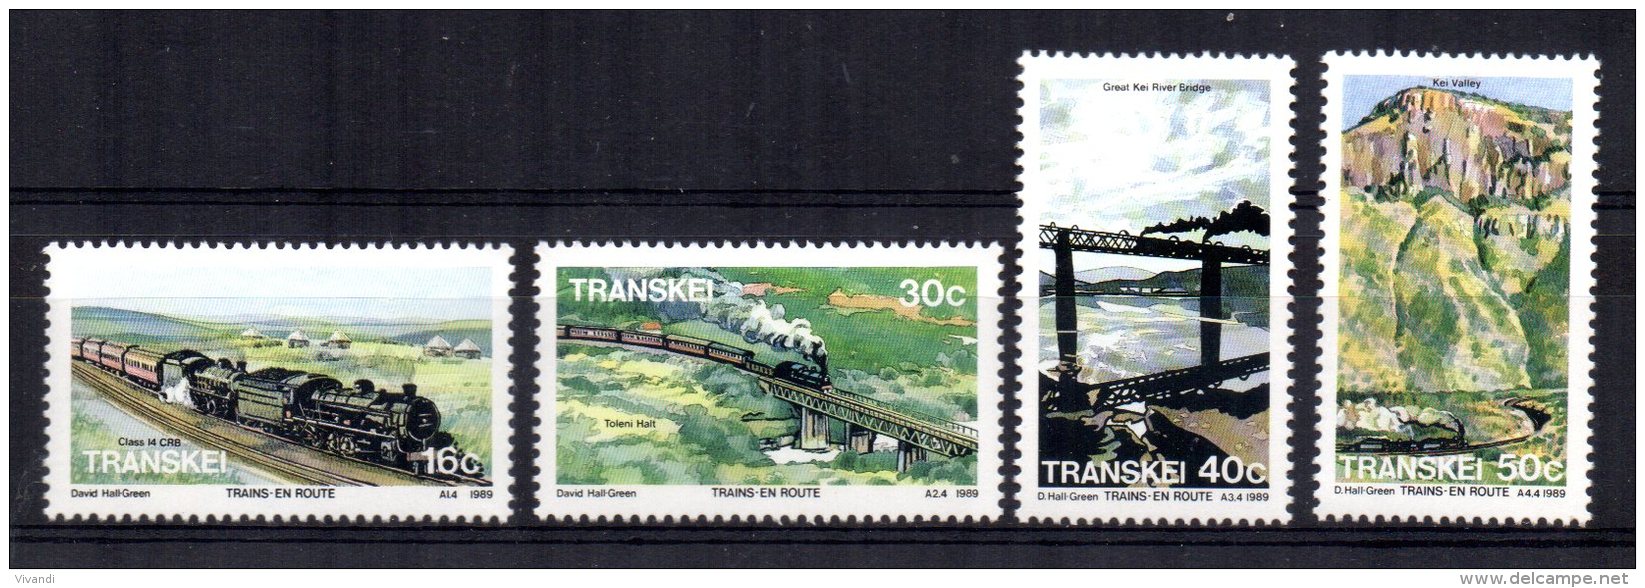 Transkei - 1989 - Trains - MNH - Transkei